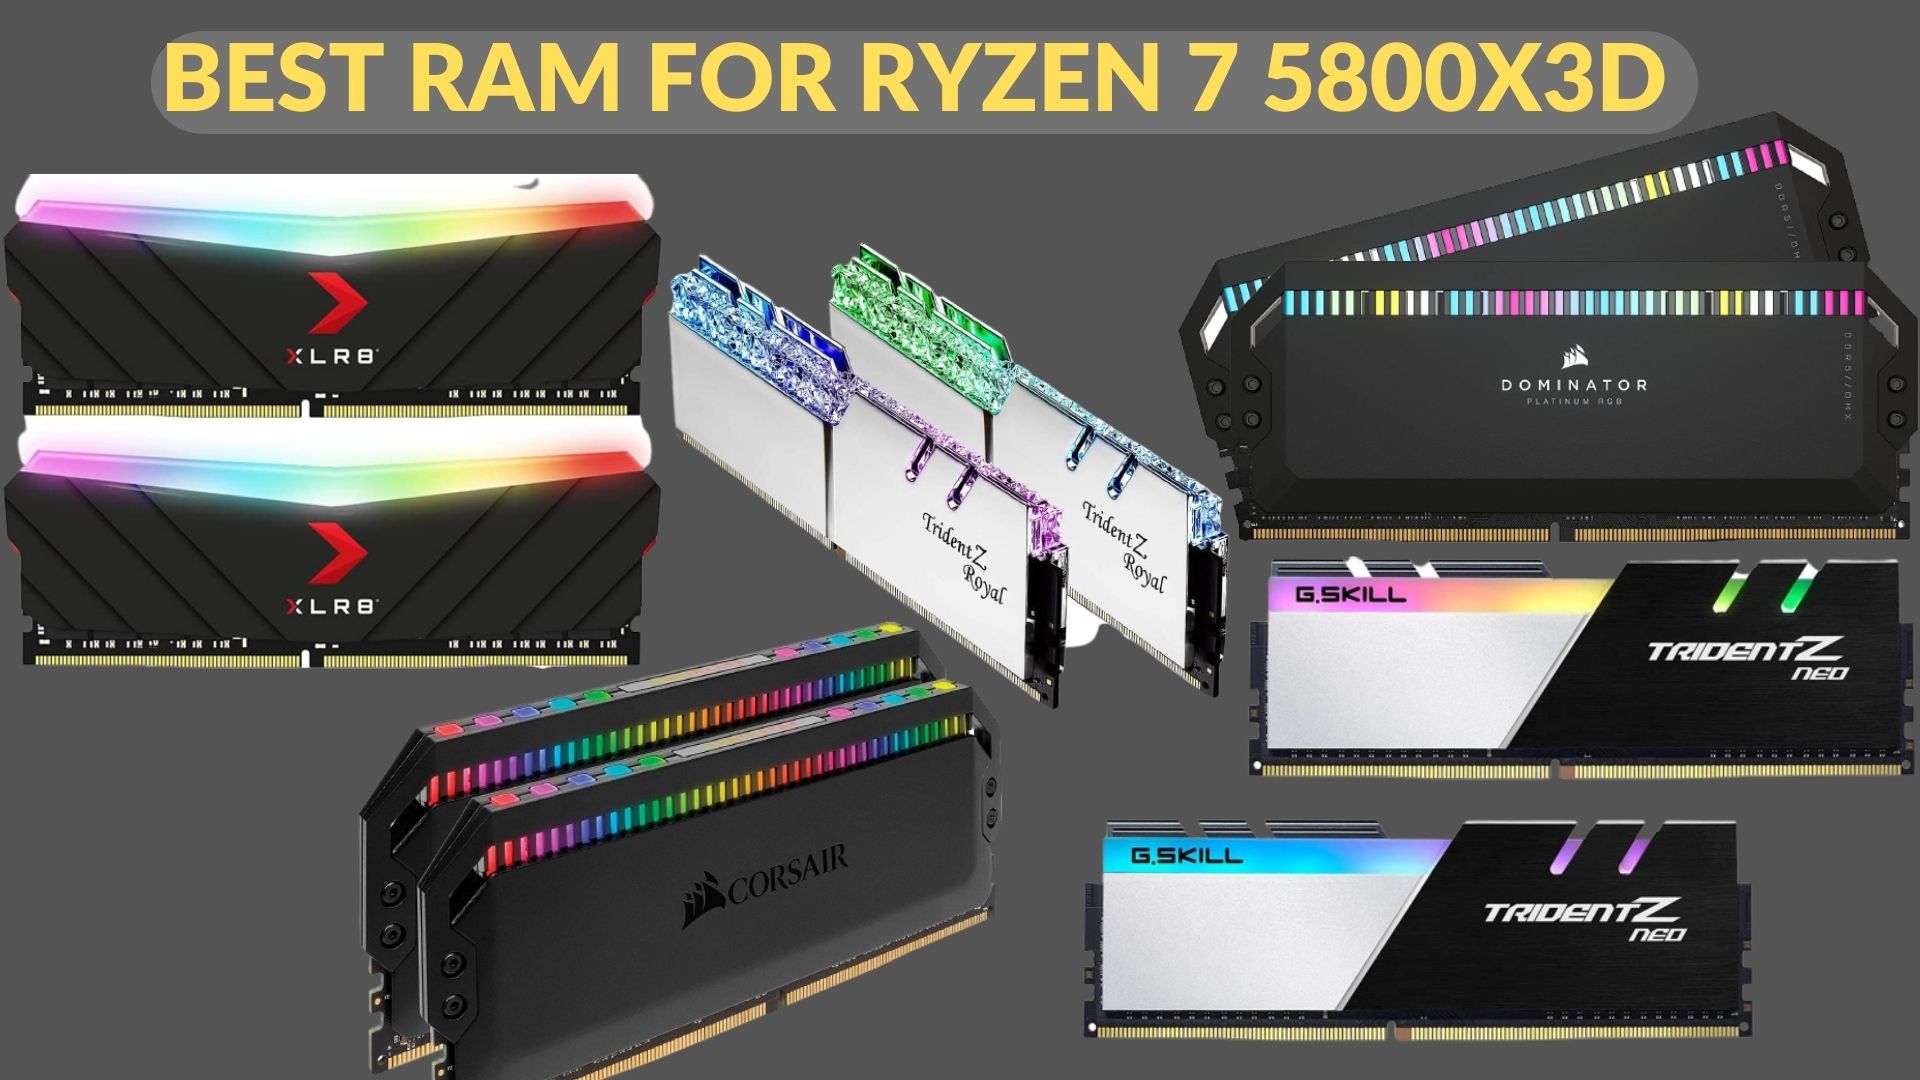 Red Delgado Escultor 6 BEST RAM For Ryzen 7 5800X3D In 2023 - Tech4Gamers